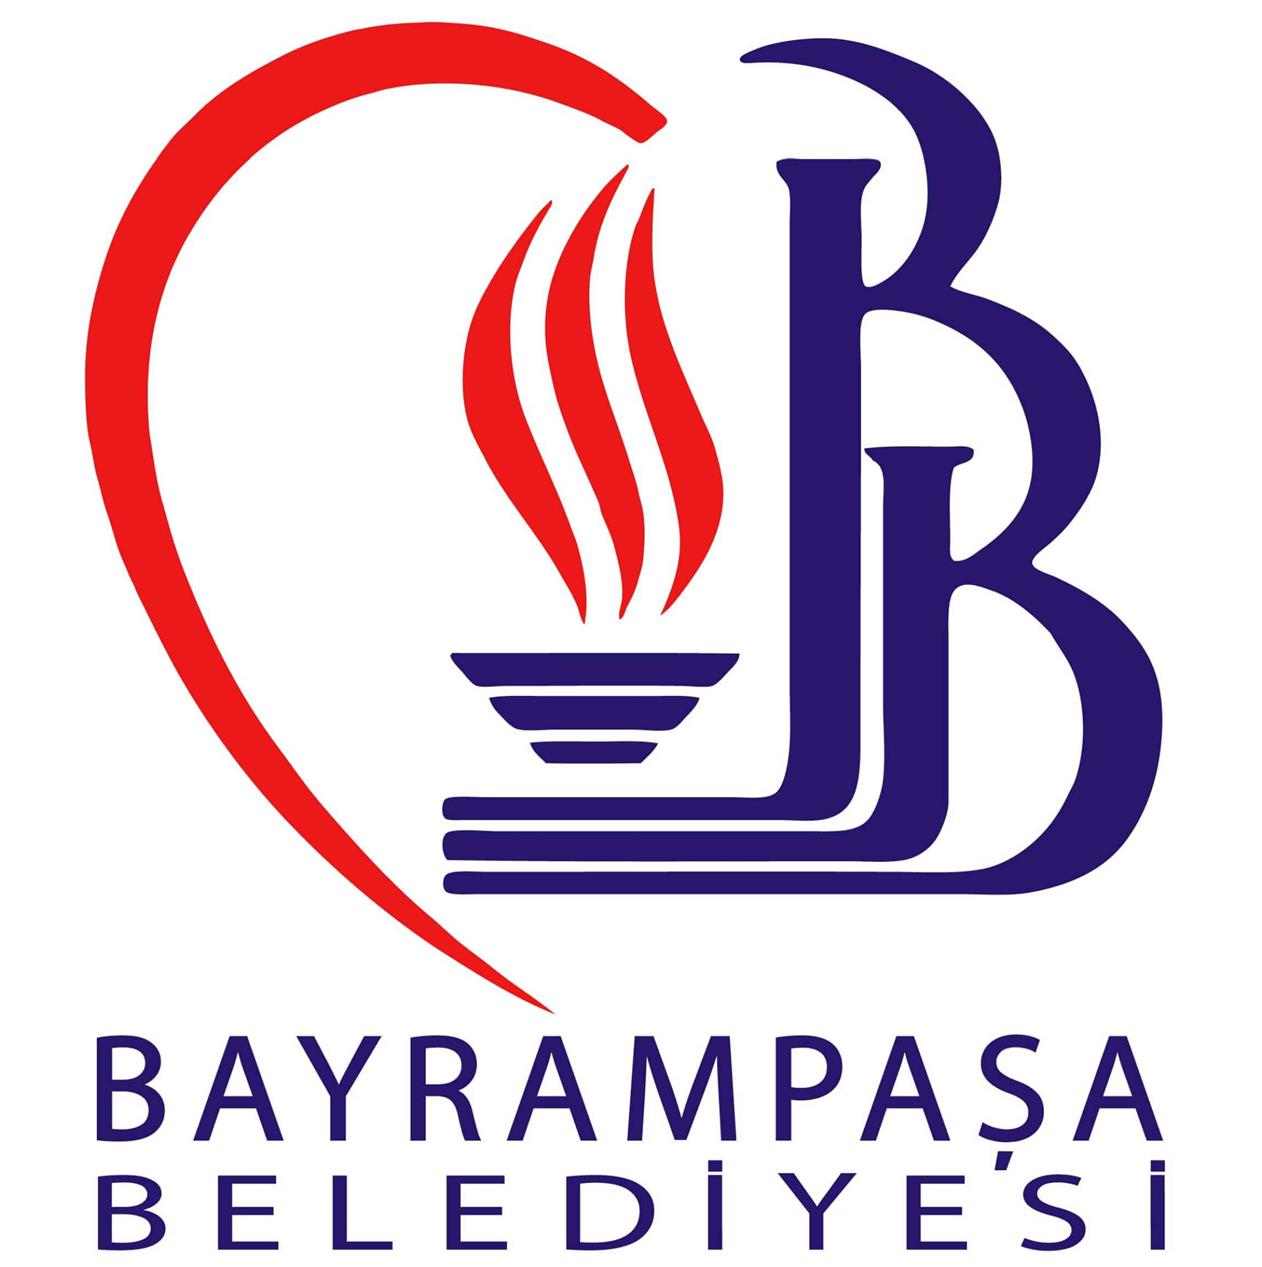 bayrampasa belediyesi logo